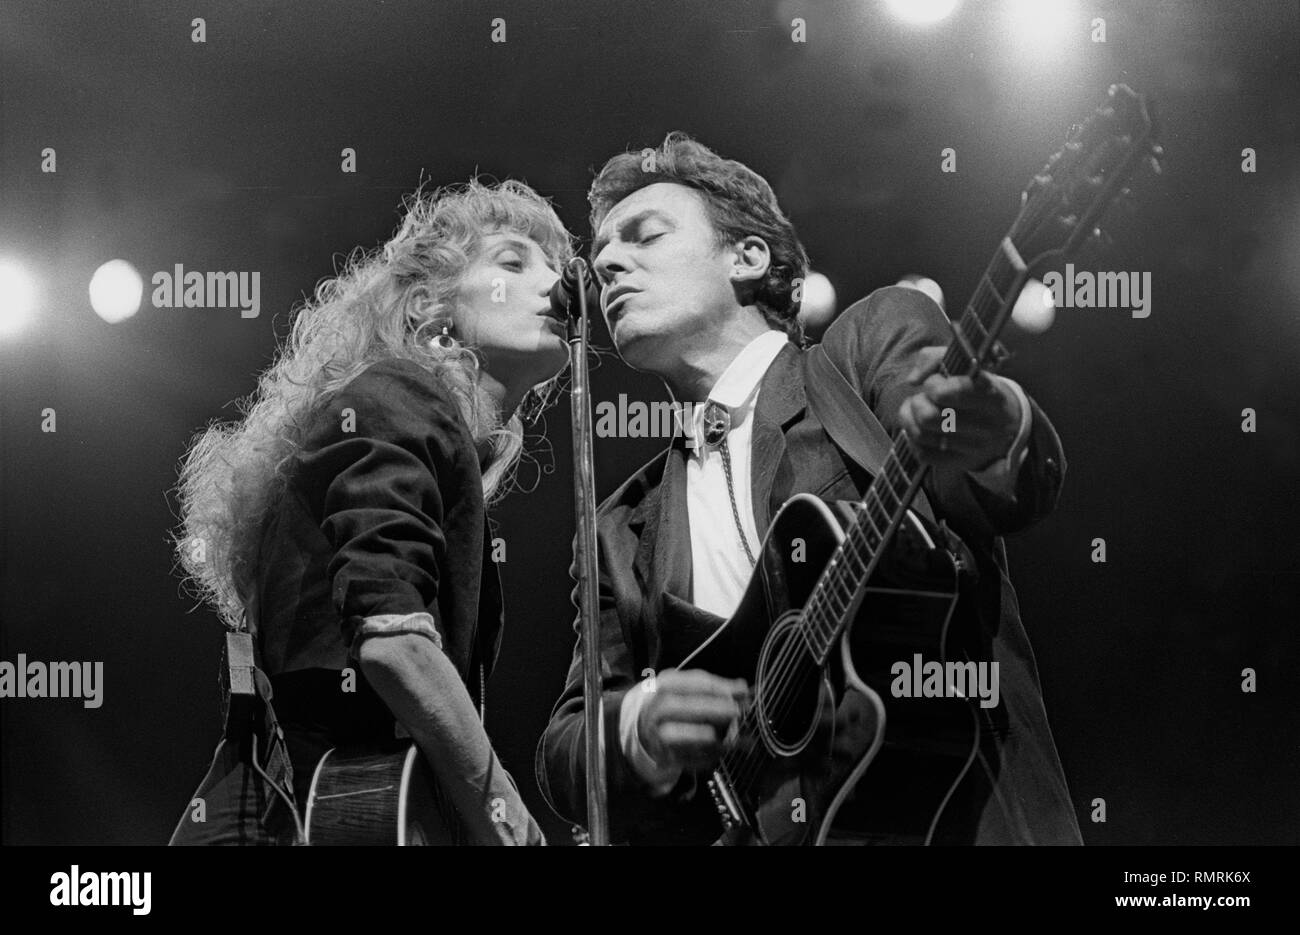 Musicien Patti Scialfa et Bruce Springsteen sont présentés sur scène pendant un concert en direct de l'apparence. Banque D'Images